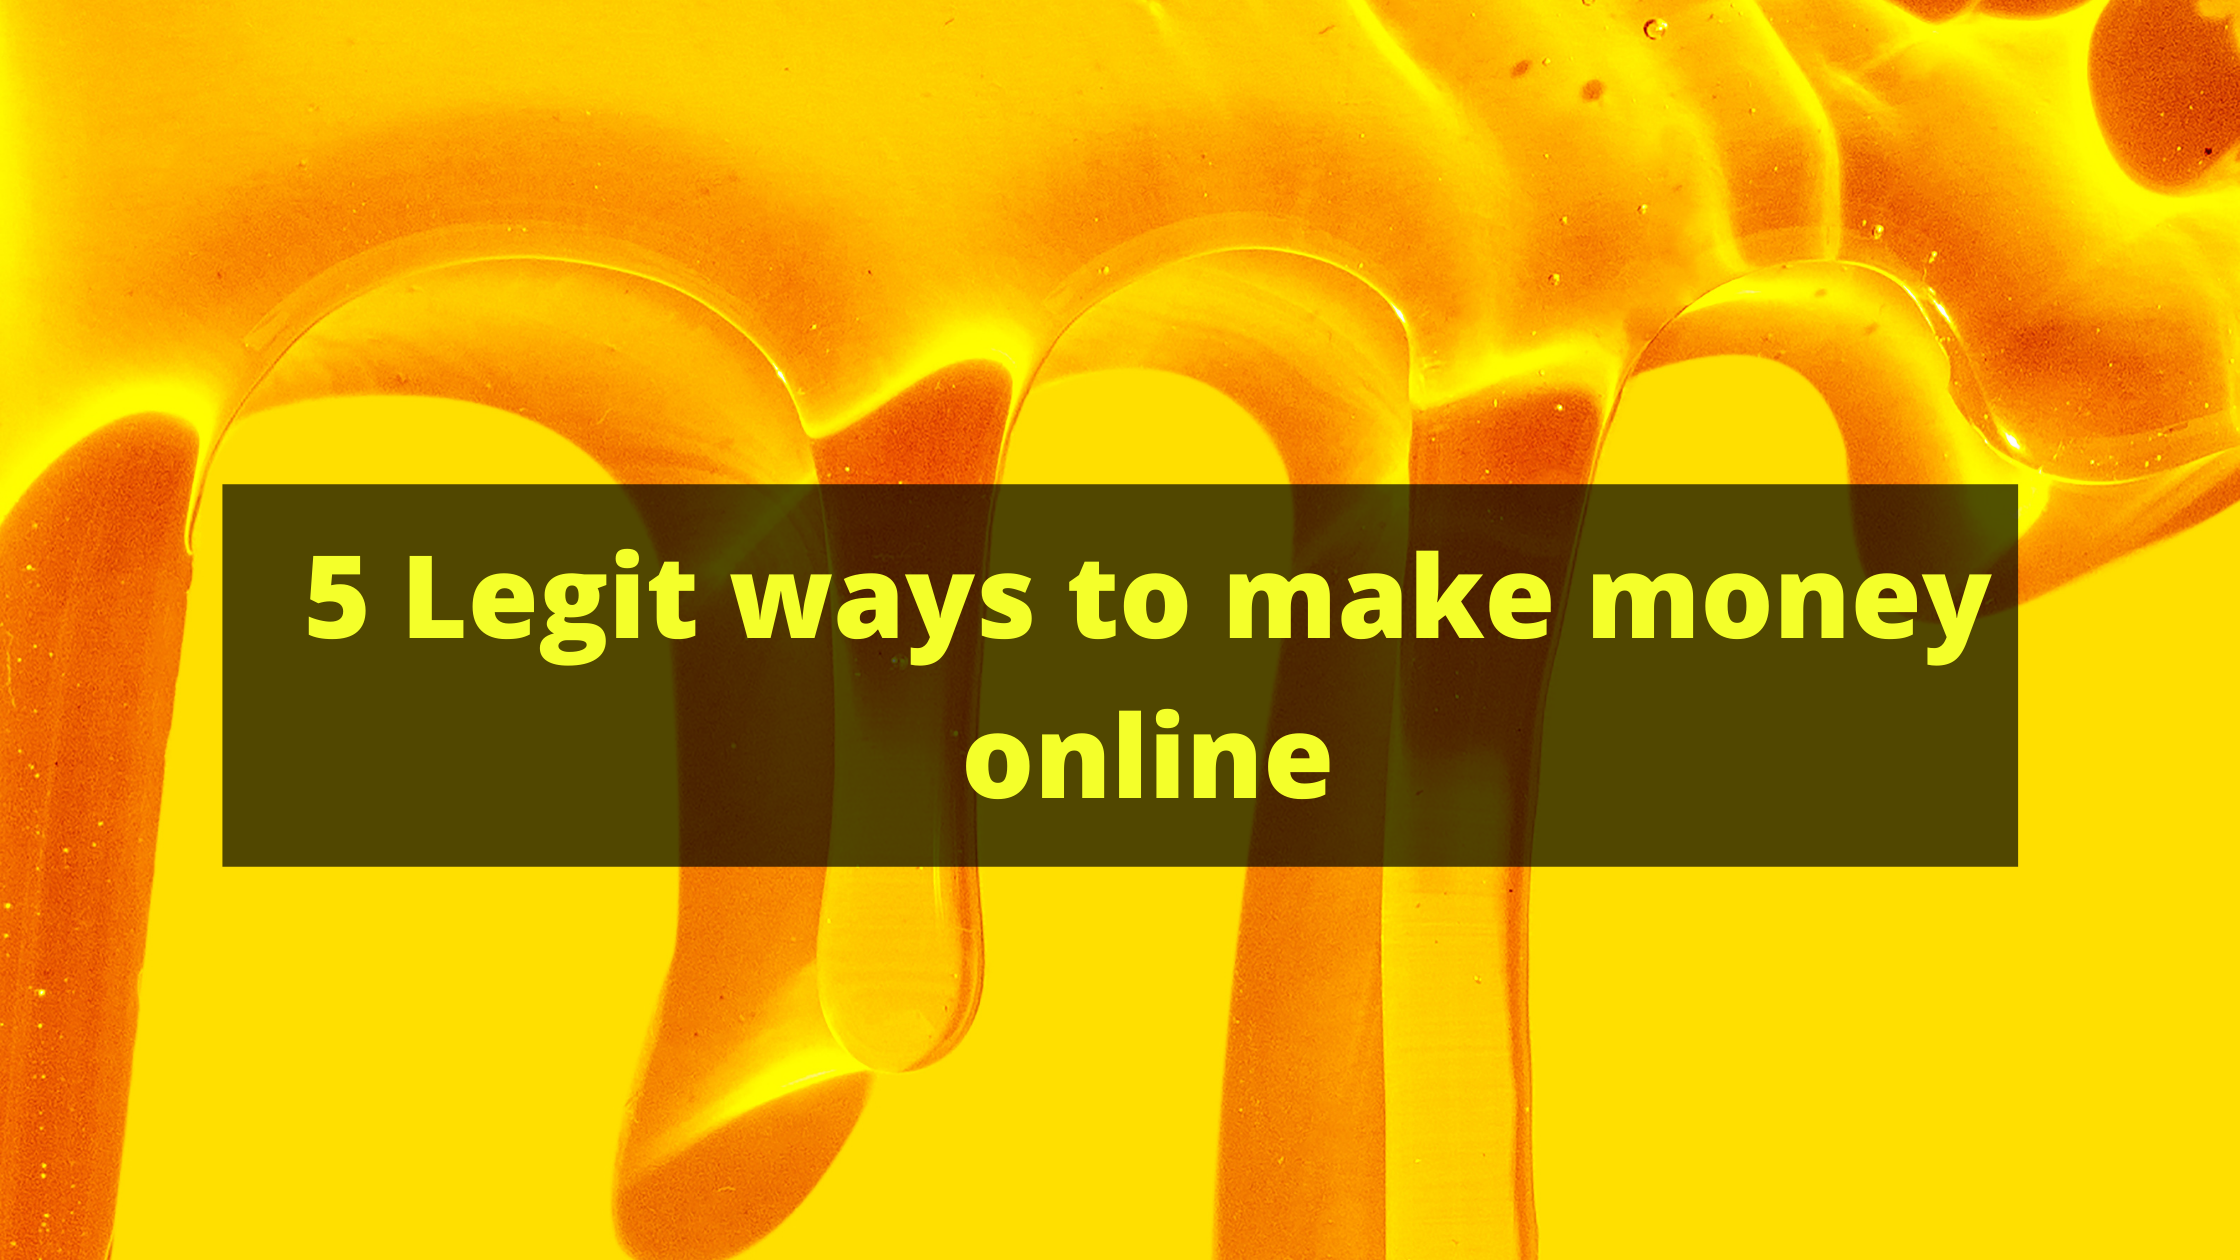 5 Legit ways to make money online